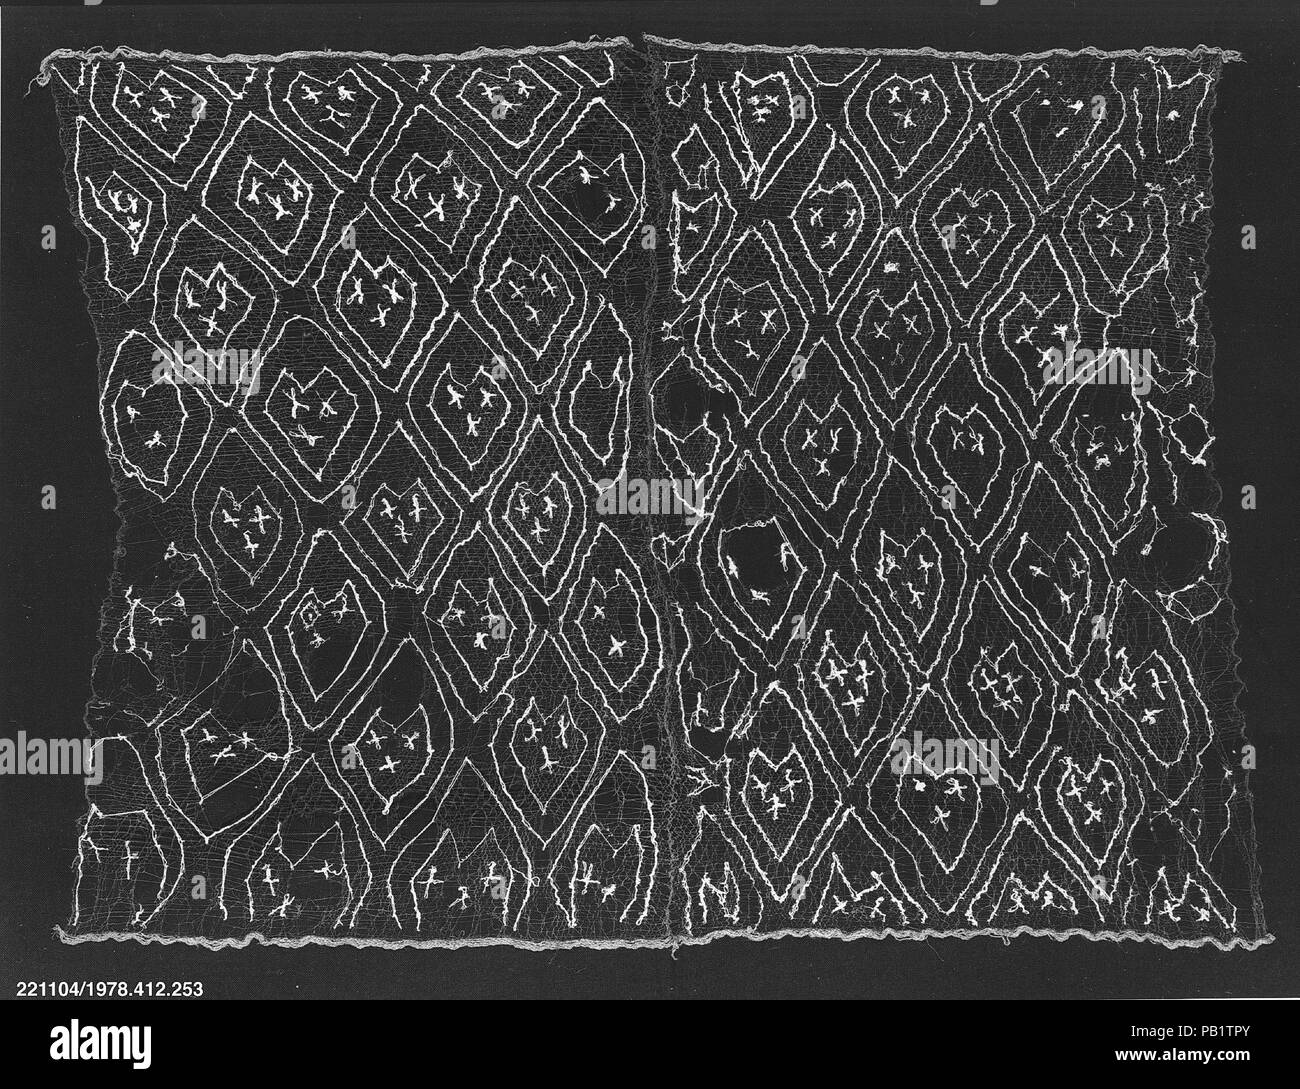 Serre-tête ajourée. Culture : Chancay. Dimensions : H. 41 x 31 5/8 W. de 7/8 in. (105,7 x 81 cm). Date : 12e-15e siècle. Musée : Metropolitan Museum of Art, New York, USA. Banque D'Images